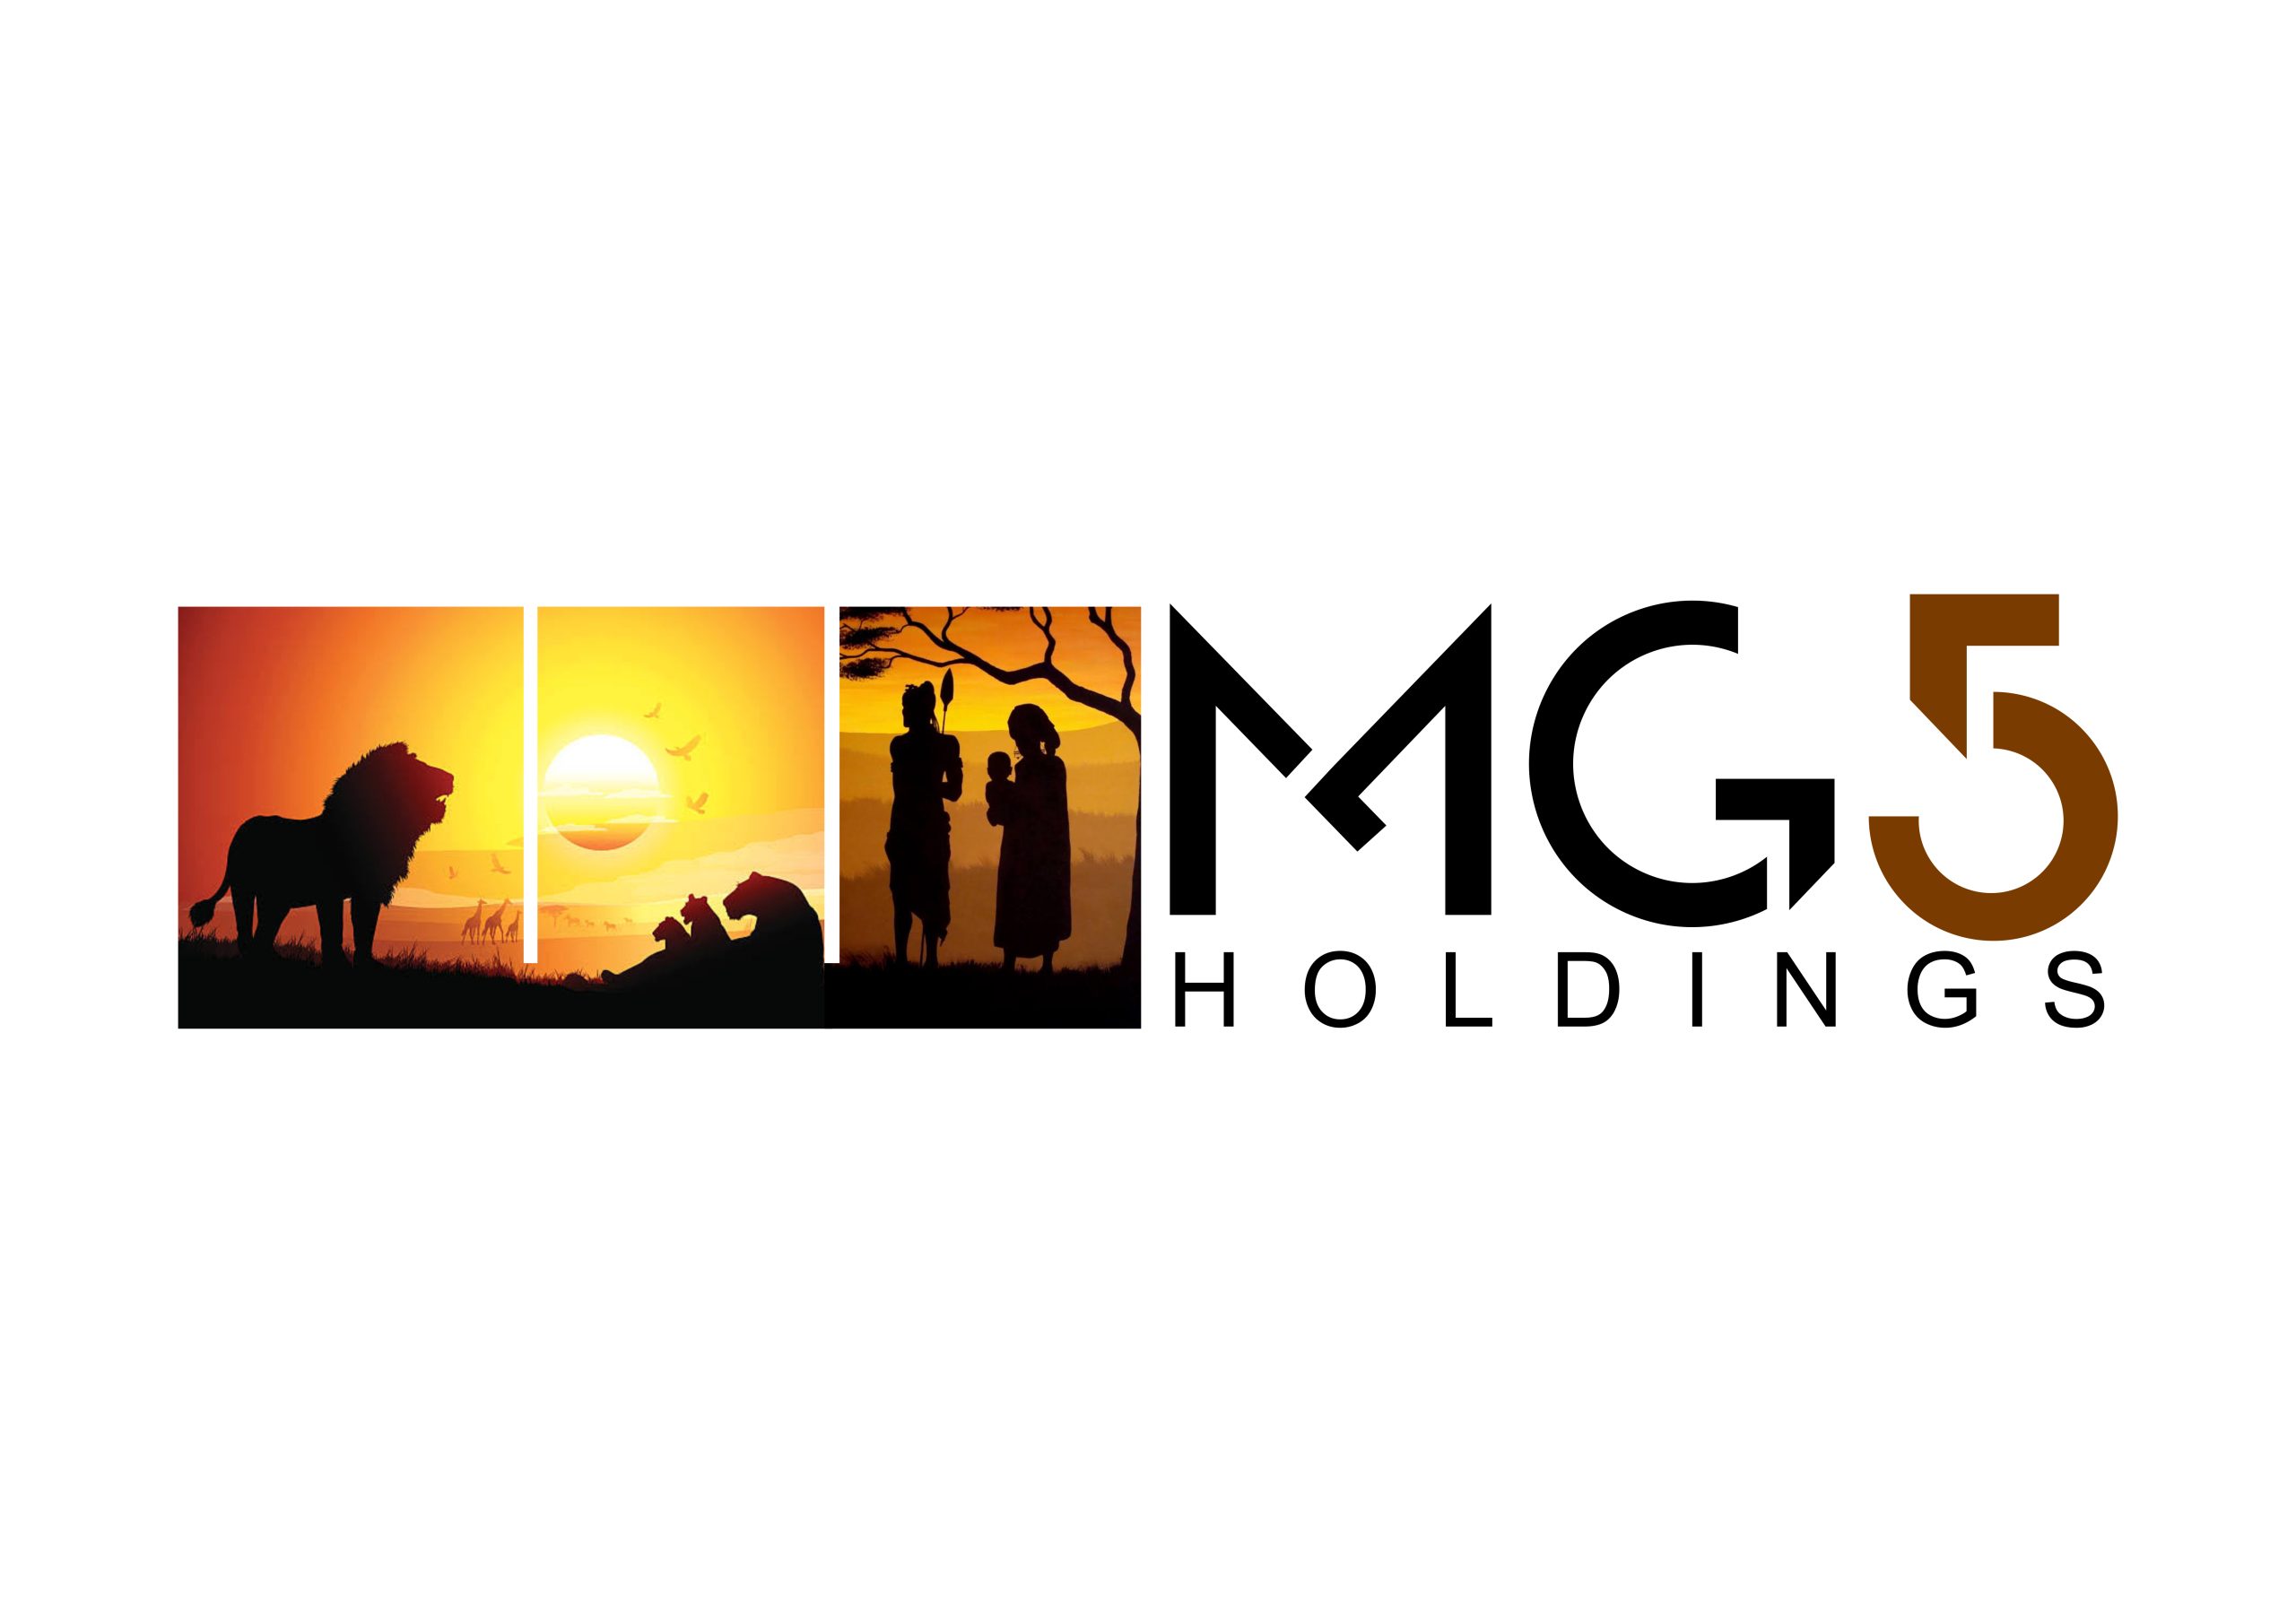 MG5 Holdings